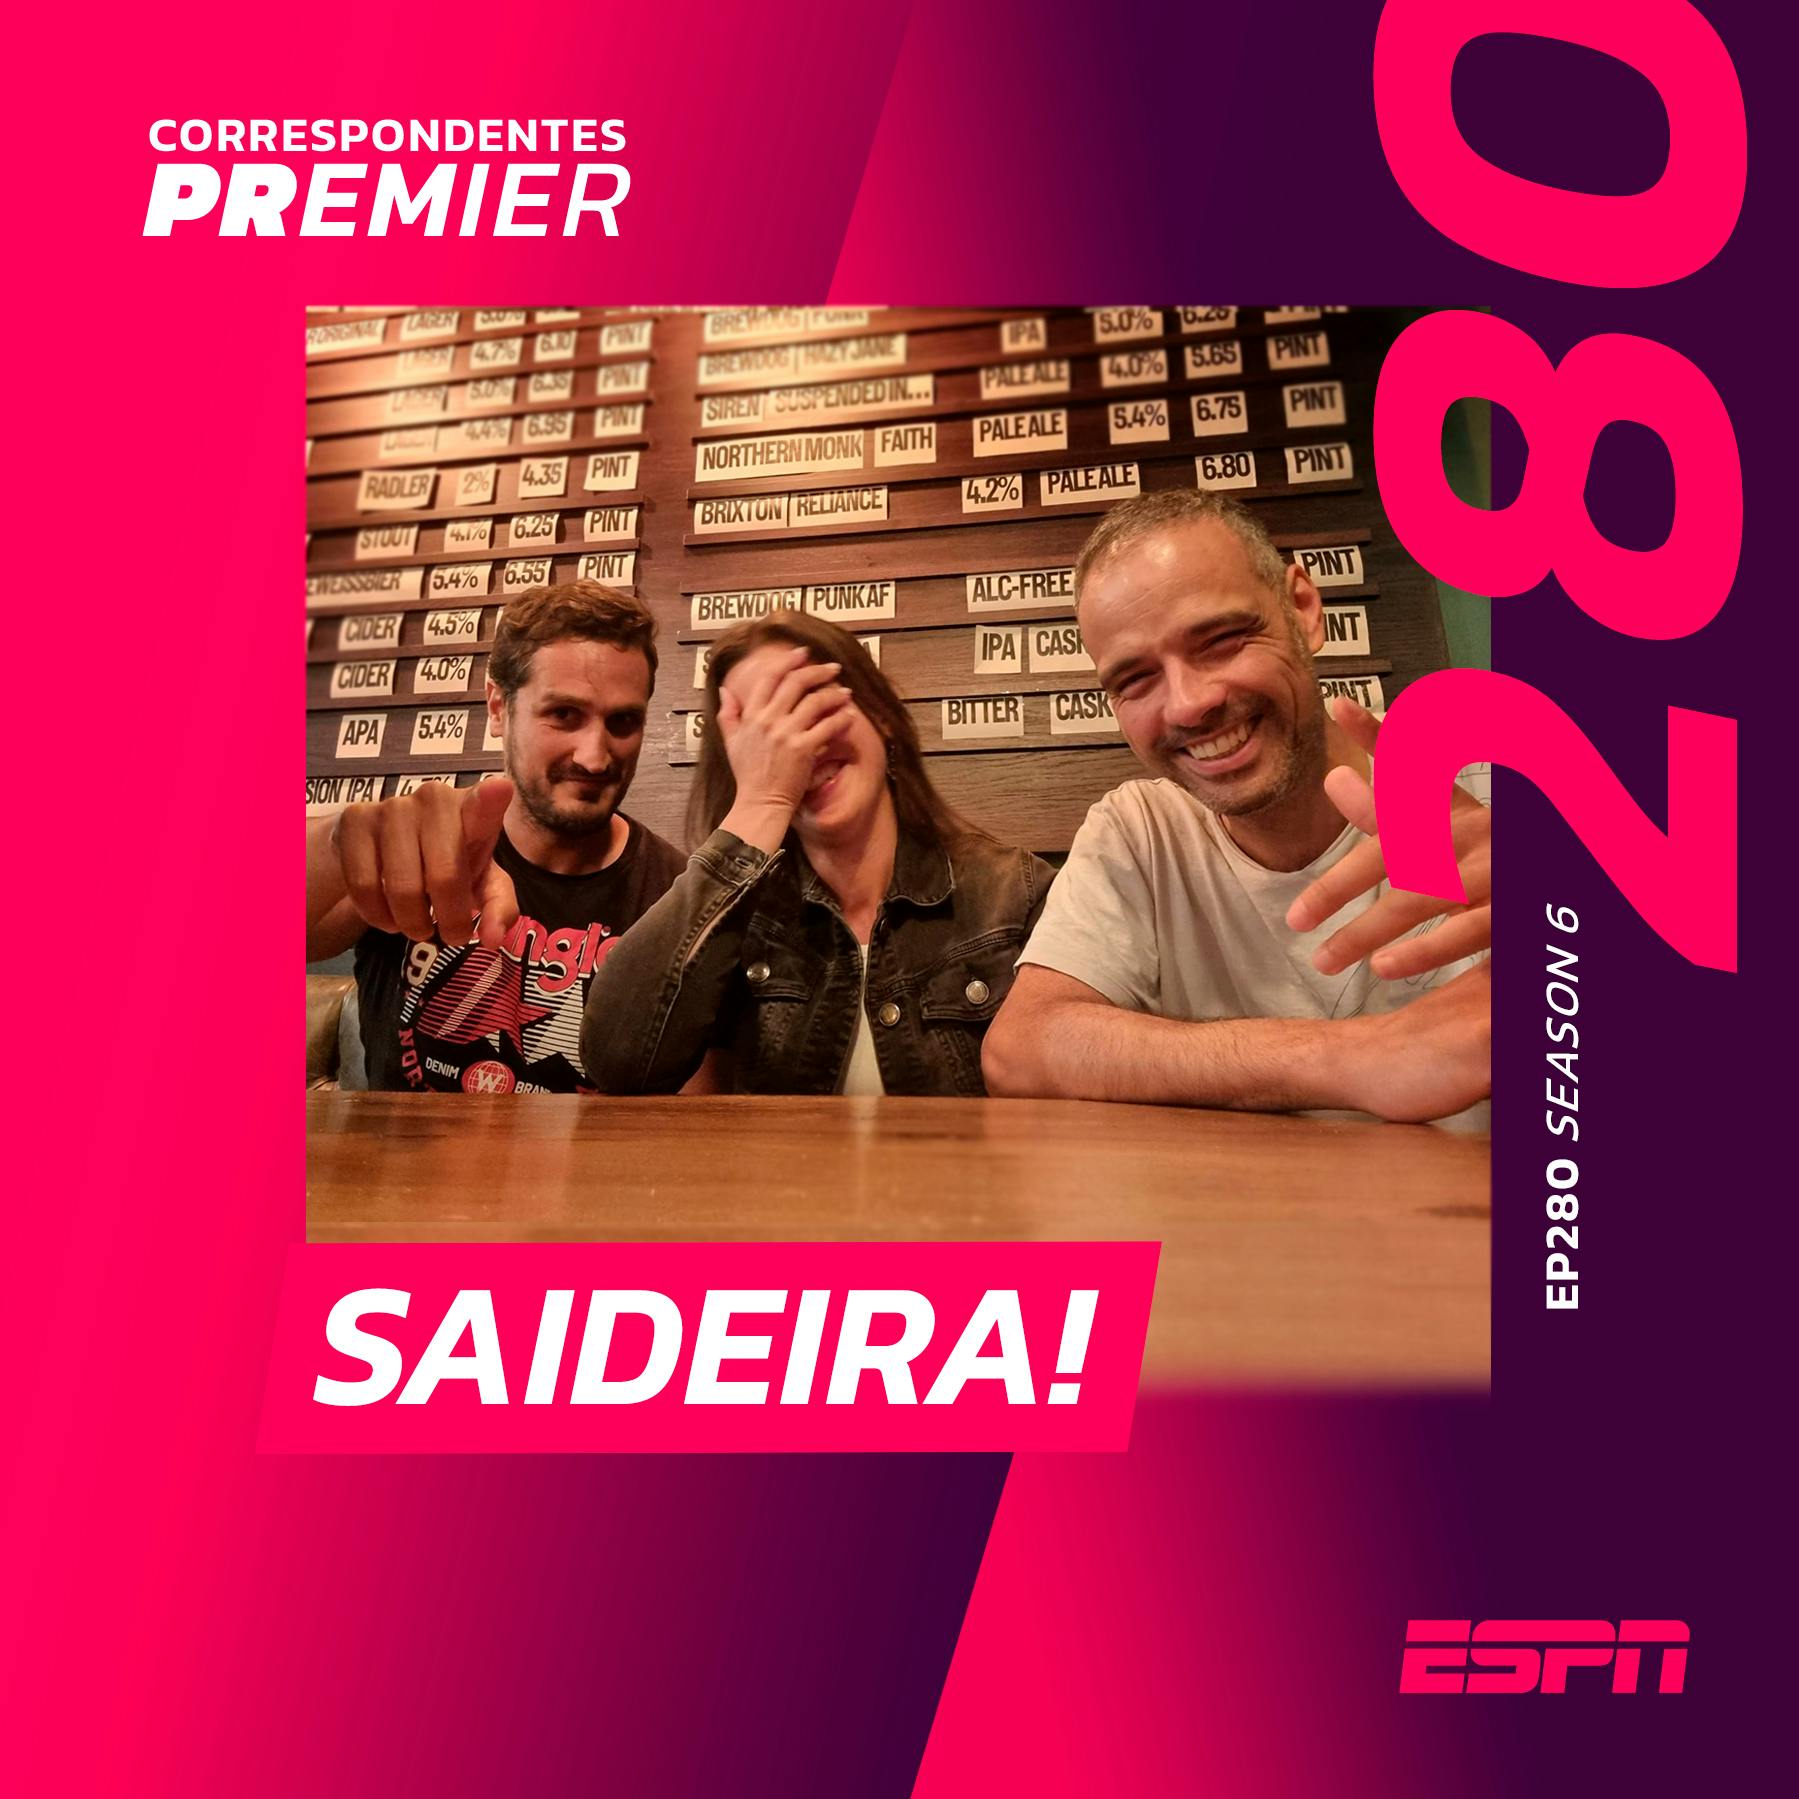 CORRESPONDENTES PREMIER #280: SAIDEIRA